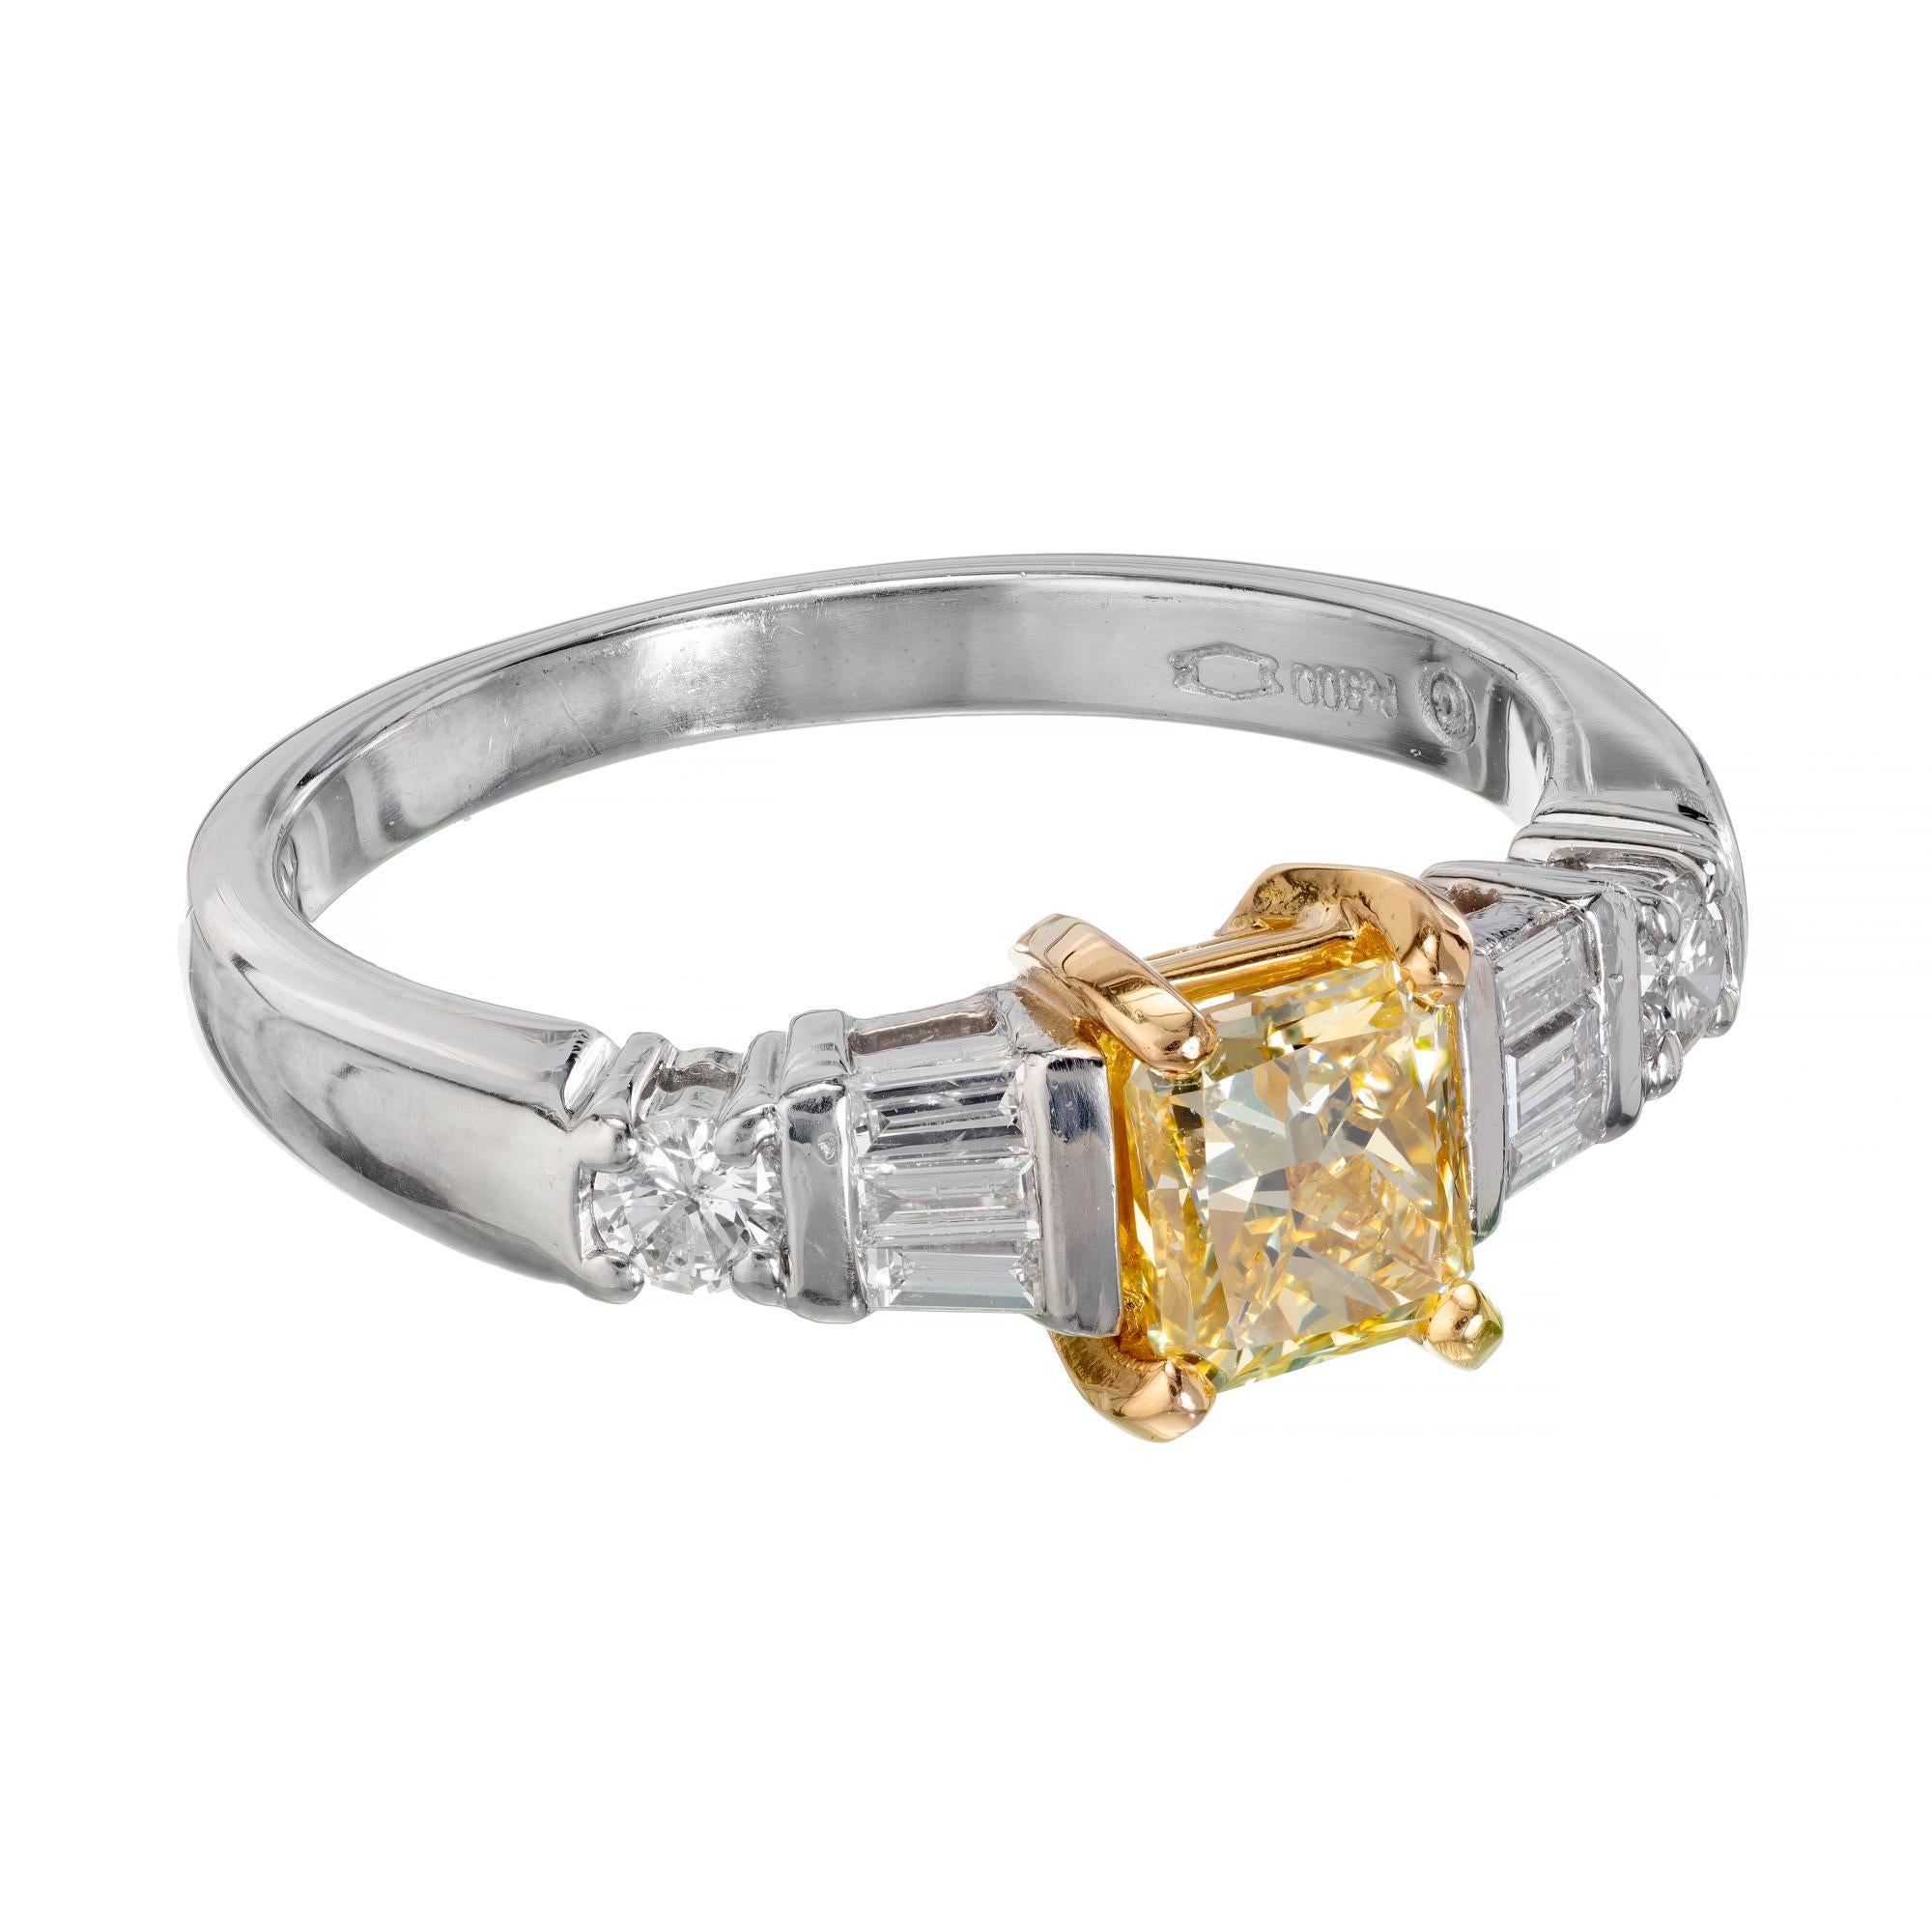 Bague de fiançailles en diamant jaune et blanc. Diamant rectangulaire jaune radiant de taille intense de couleur naturelle dans une monture en platine et or rose avec des accents de diamants baguettes et ronds. Certifié par le GIA. 

1 diamant